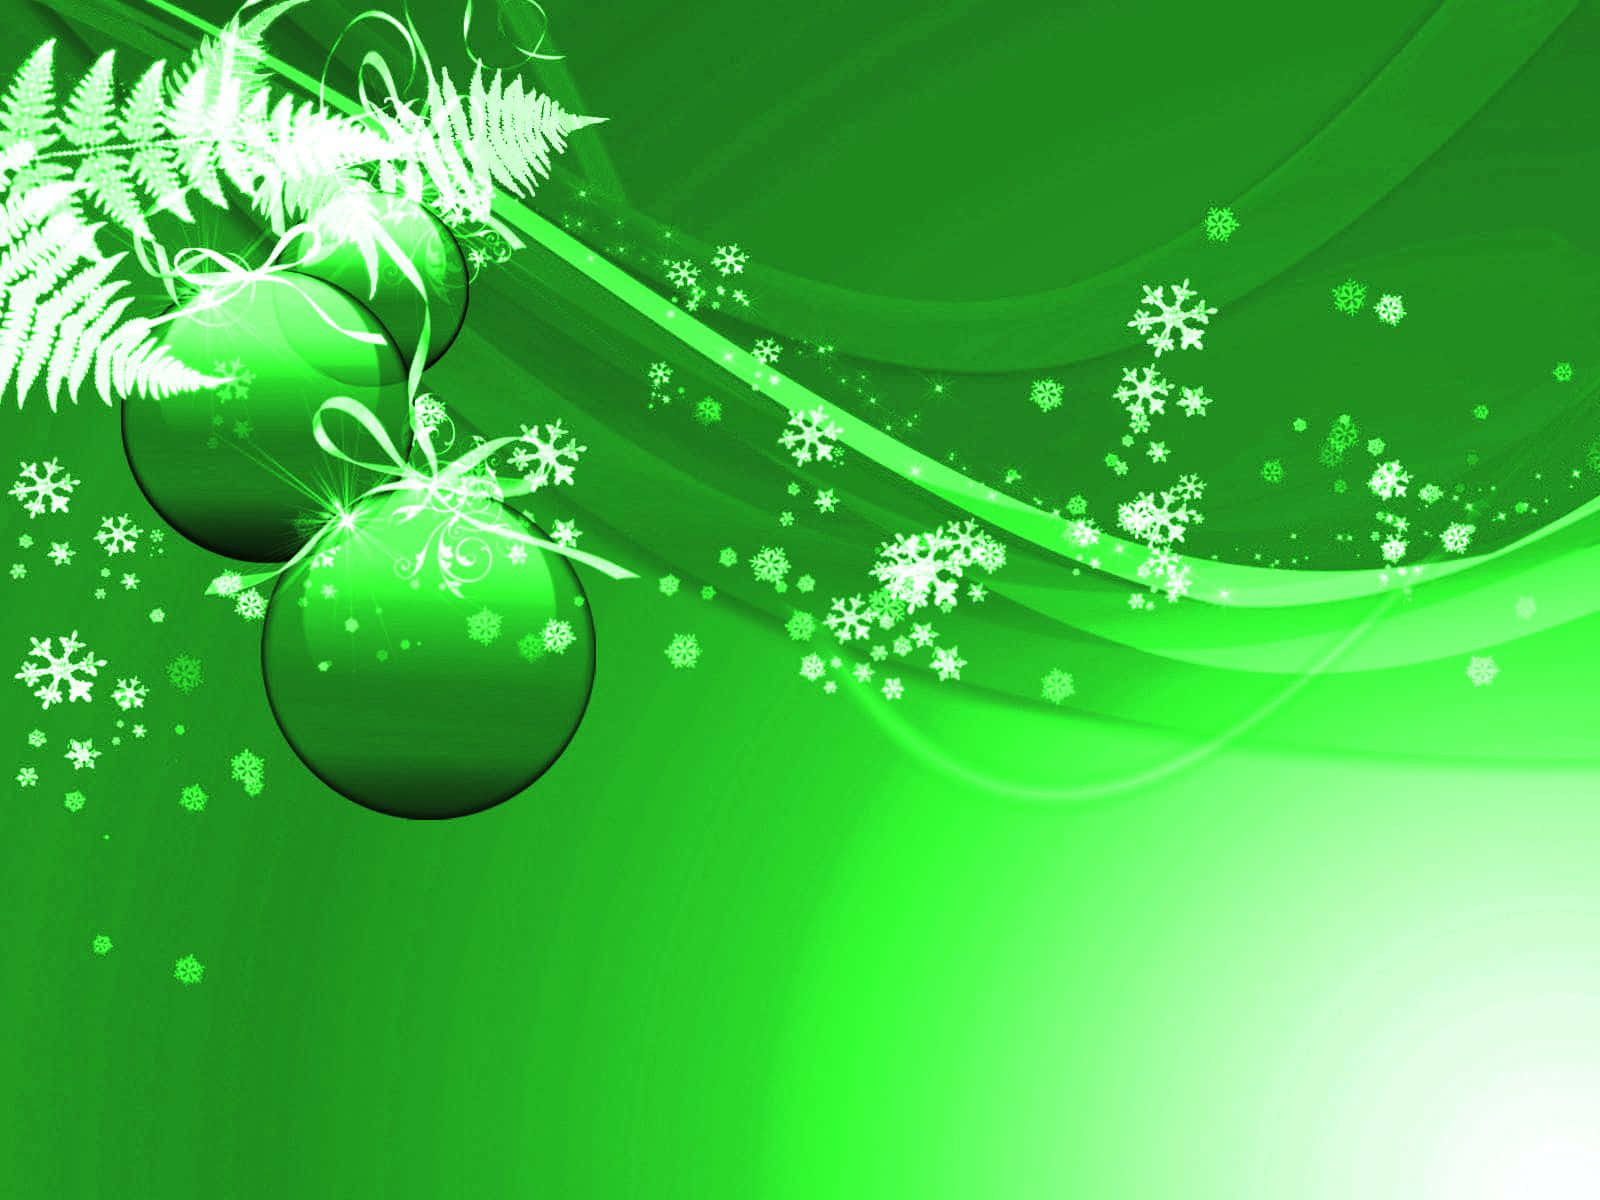 Feiereeine Festliche Und Nachhaltige Jahreszeit Mit Grünem Weihnachten. Wallpaper